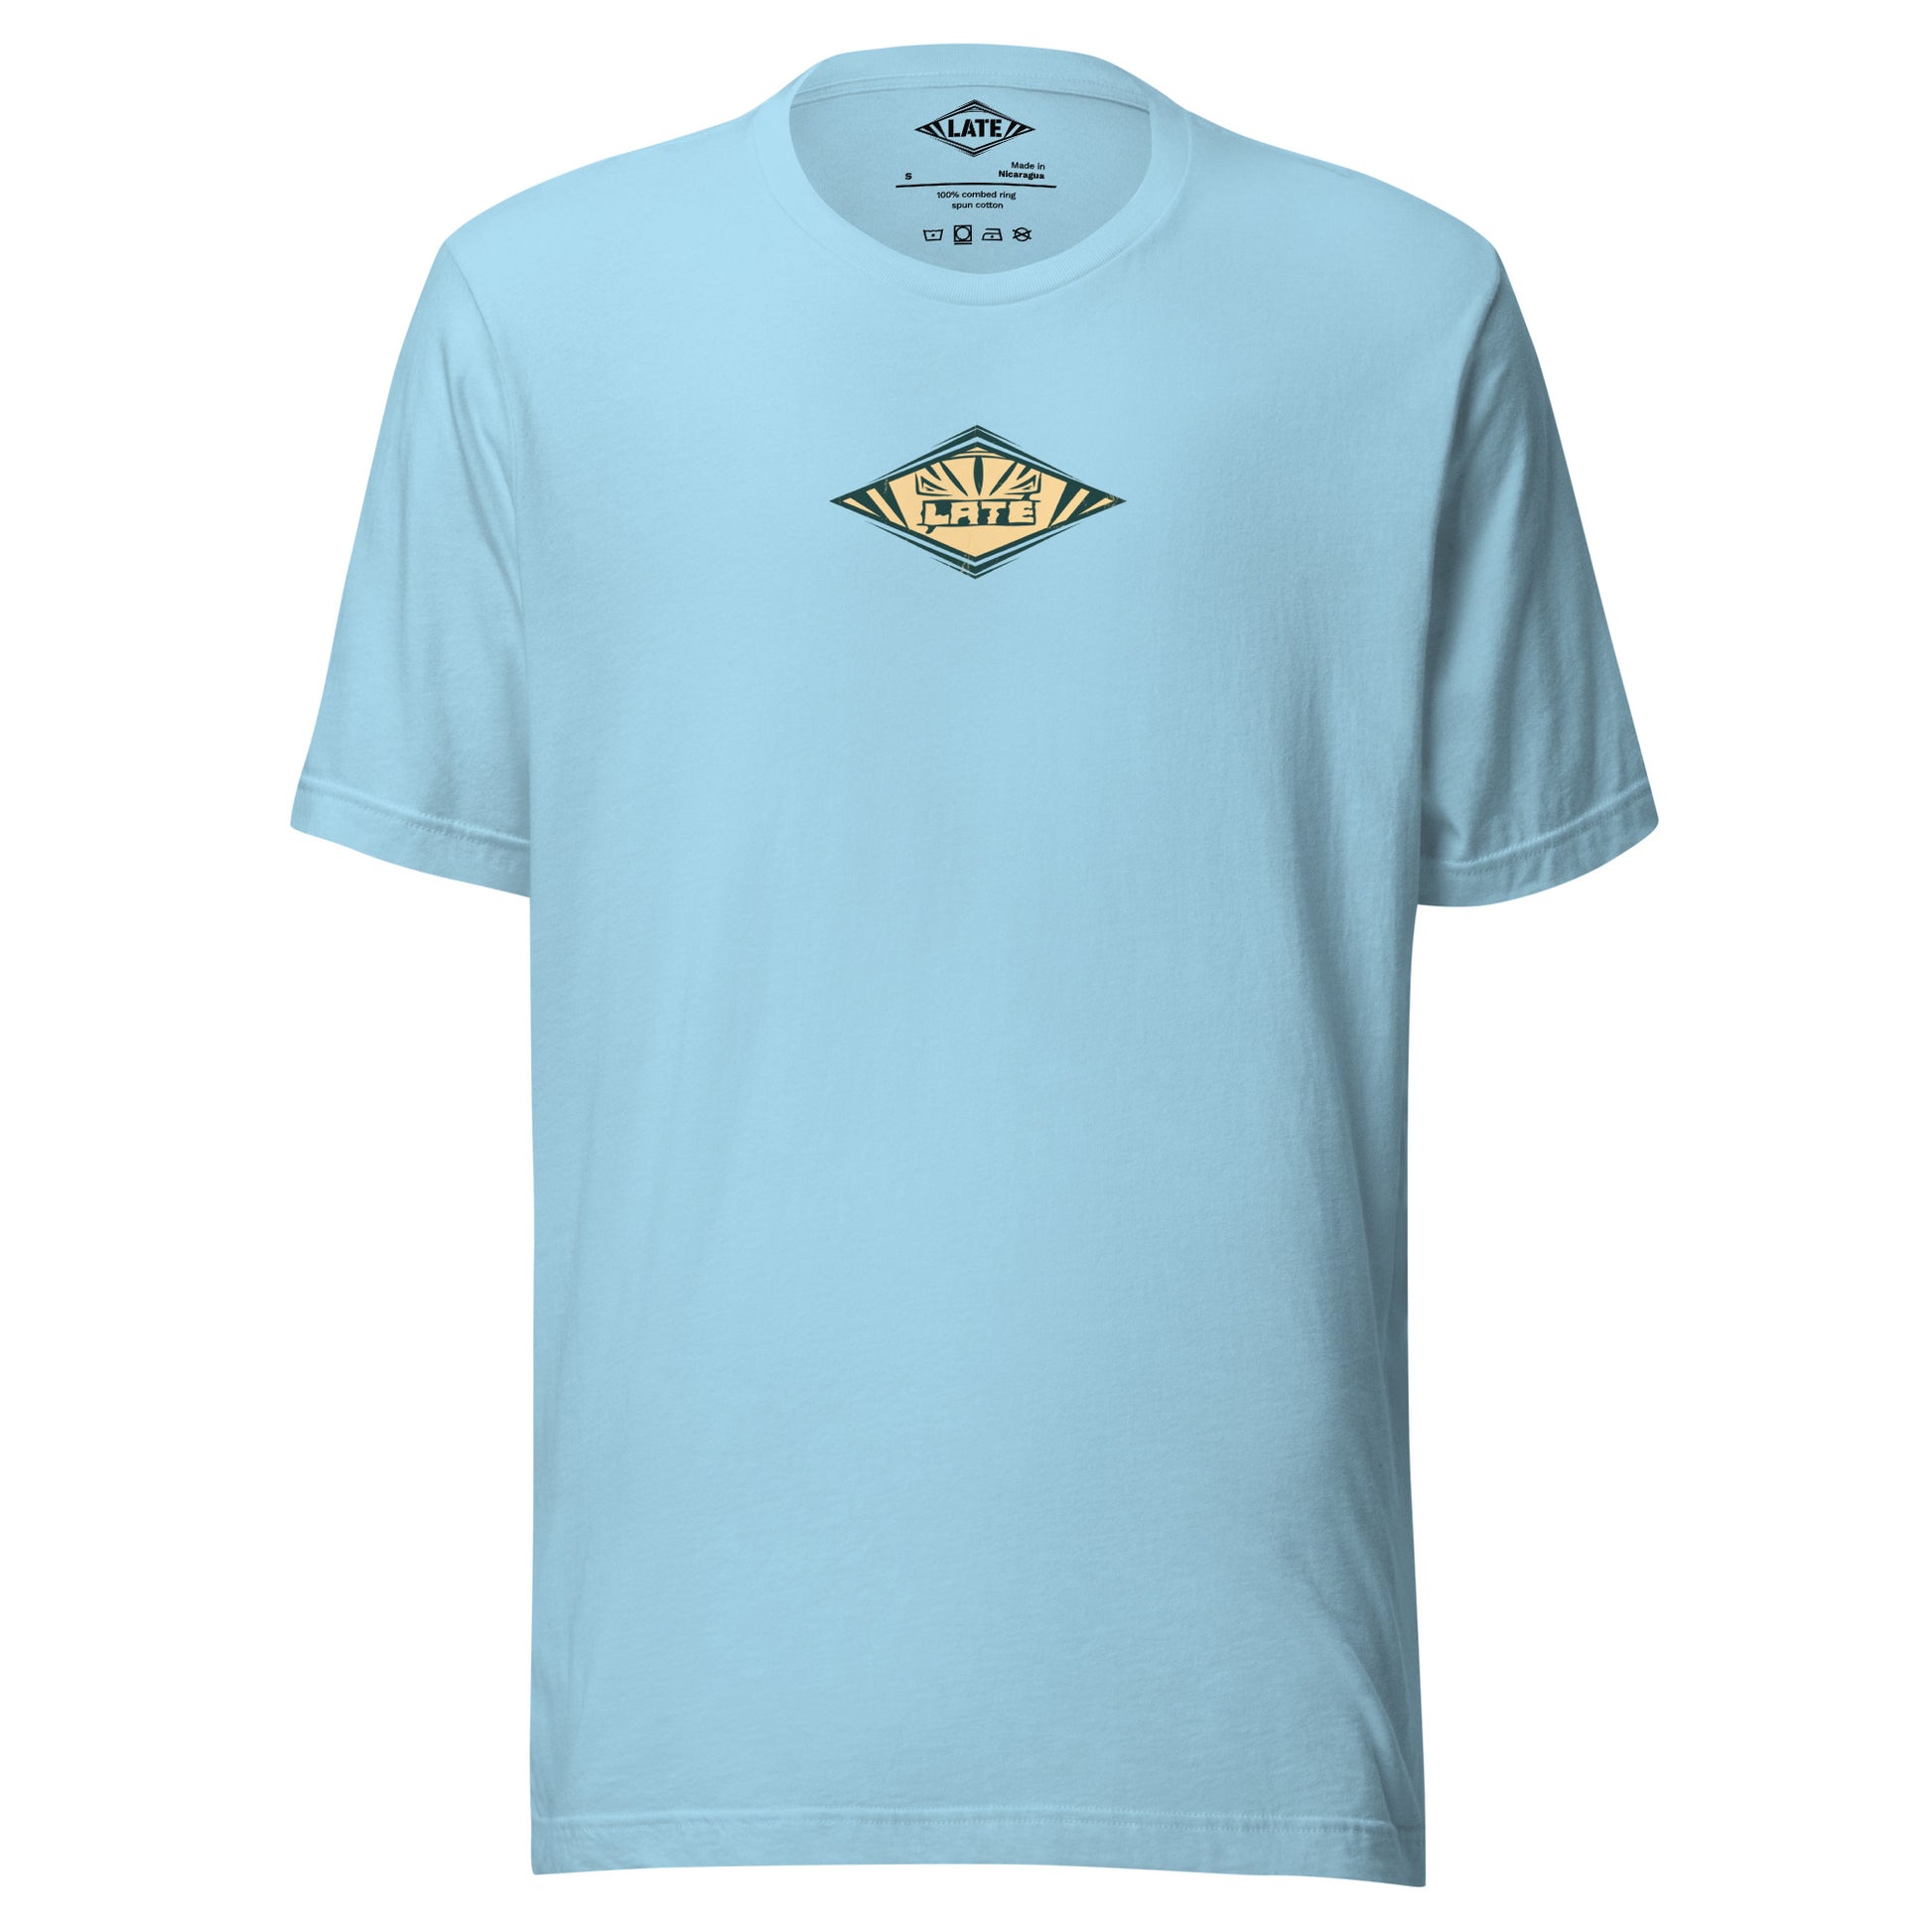 T-Shirt rétro Radical Wave, inspiration maori et vagues des spots mondiaux. Tee shirt unisexe de face bleu océan